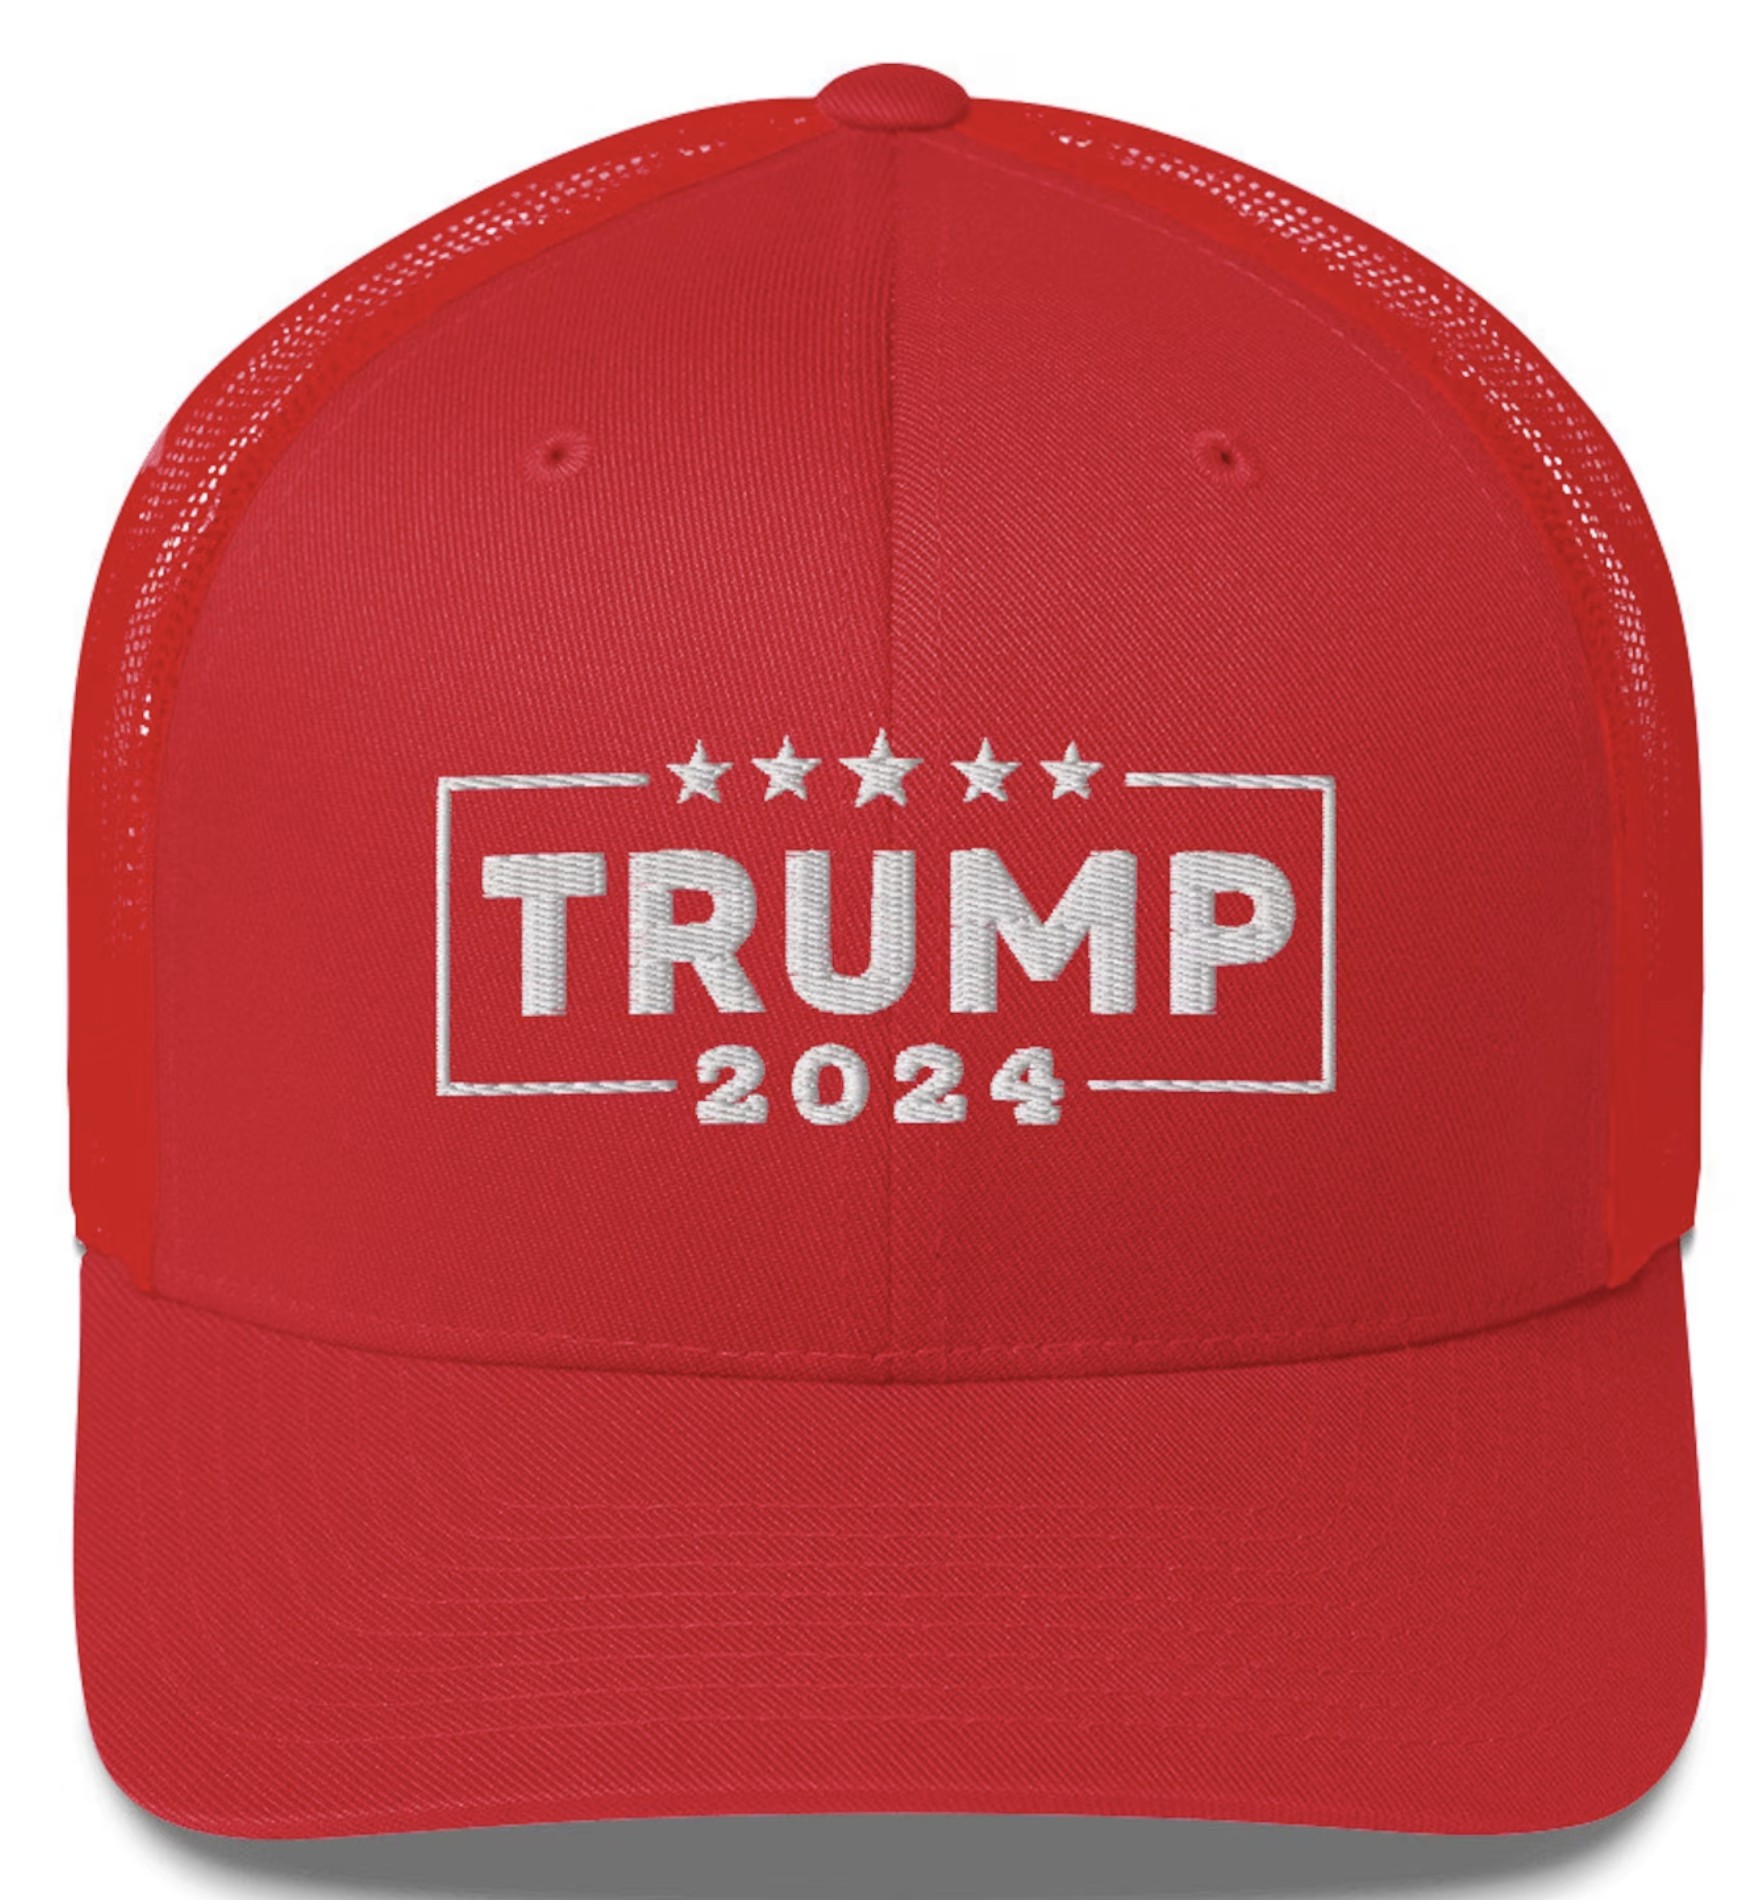 Trump 2024 Hat, Trump 2024 Trucker Cap